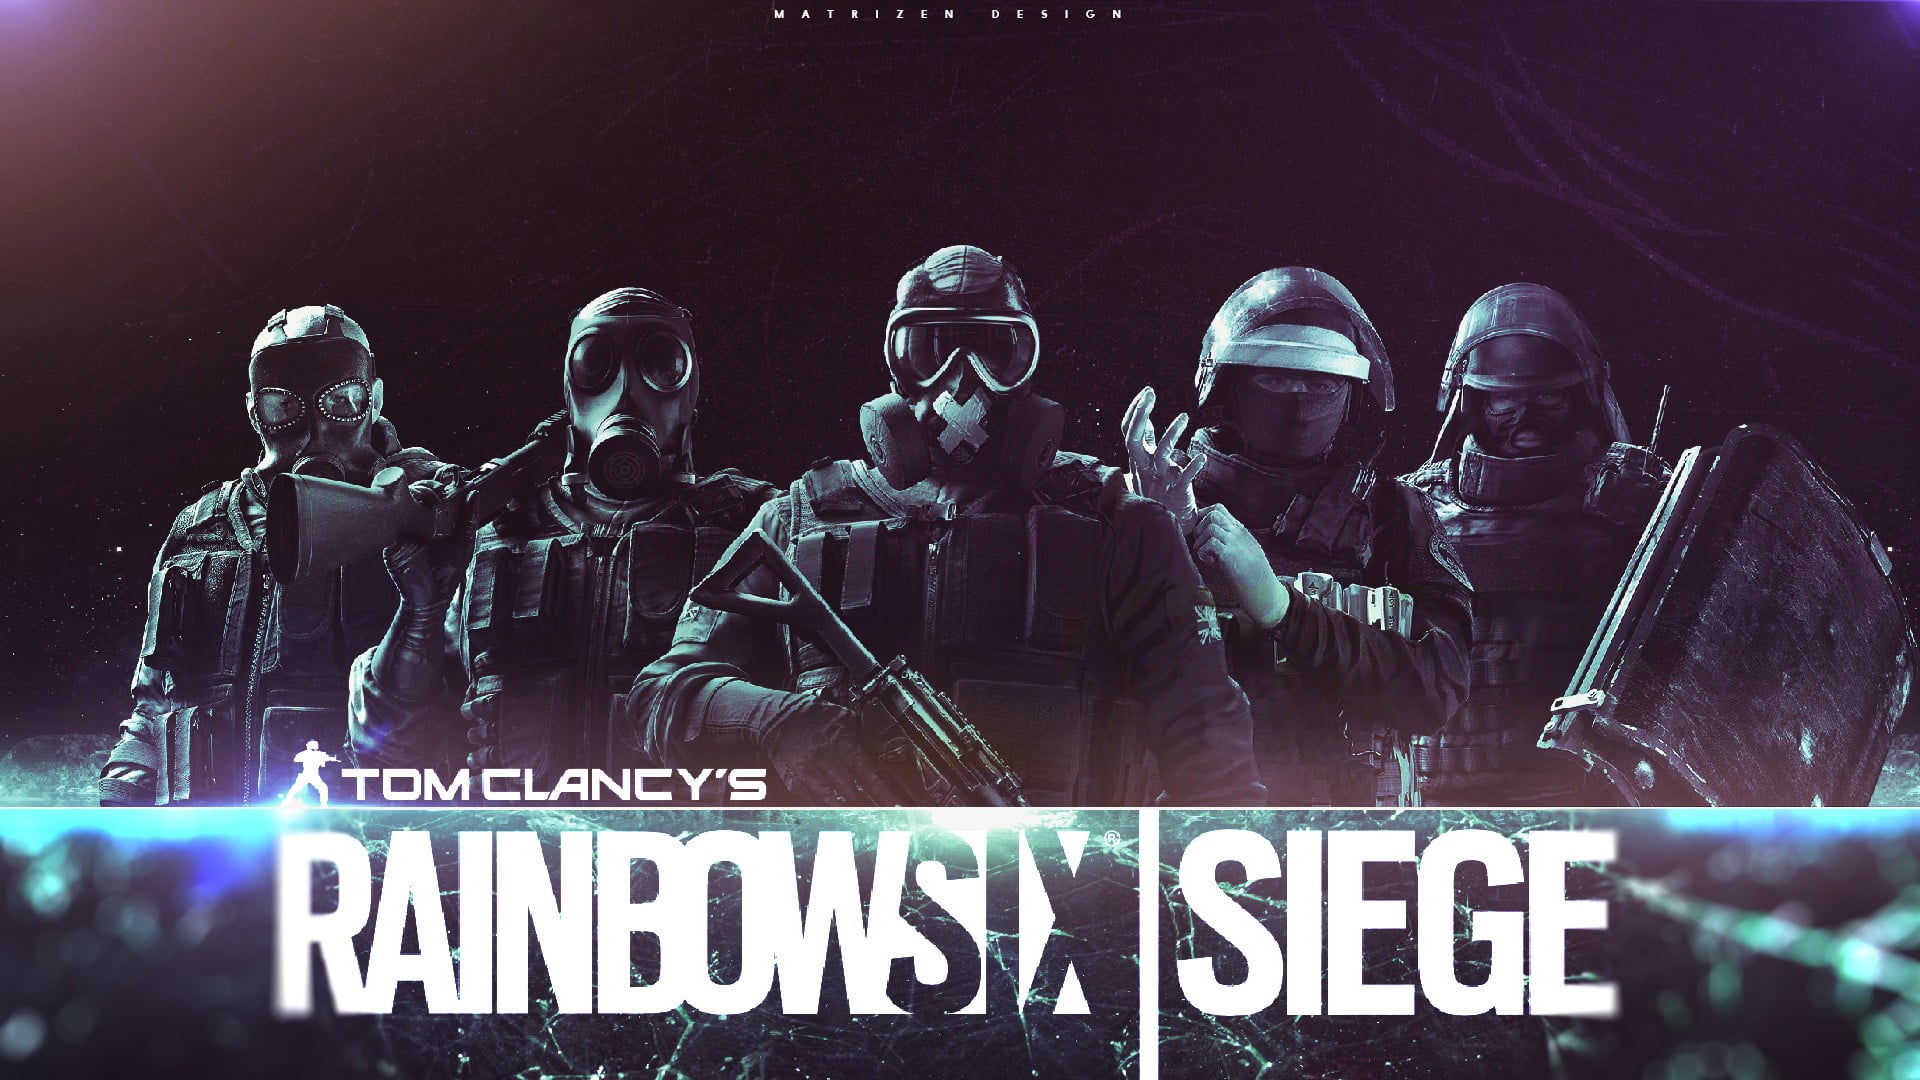 Rainbow Six Siege digital wallpaper, video games, soldier, rainbowsix siege, digital art